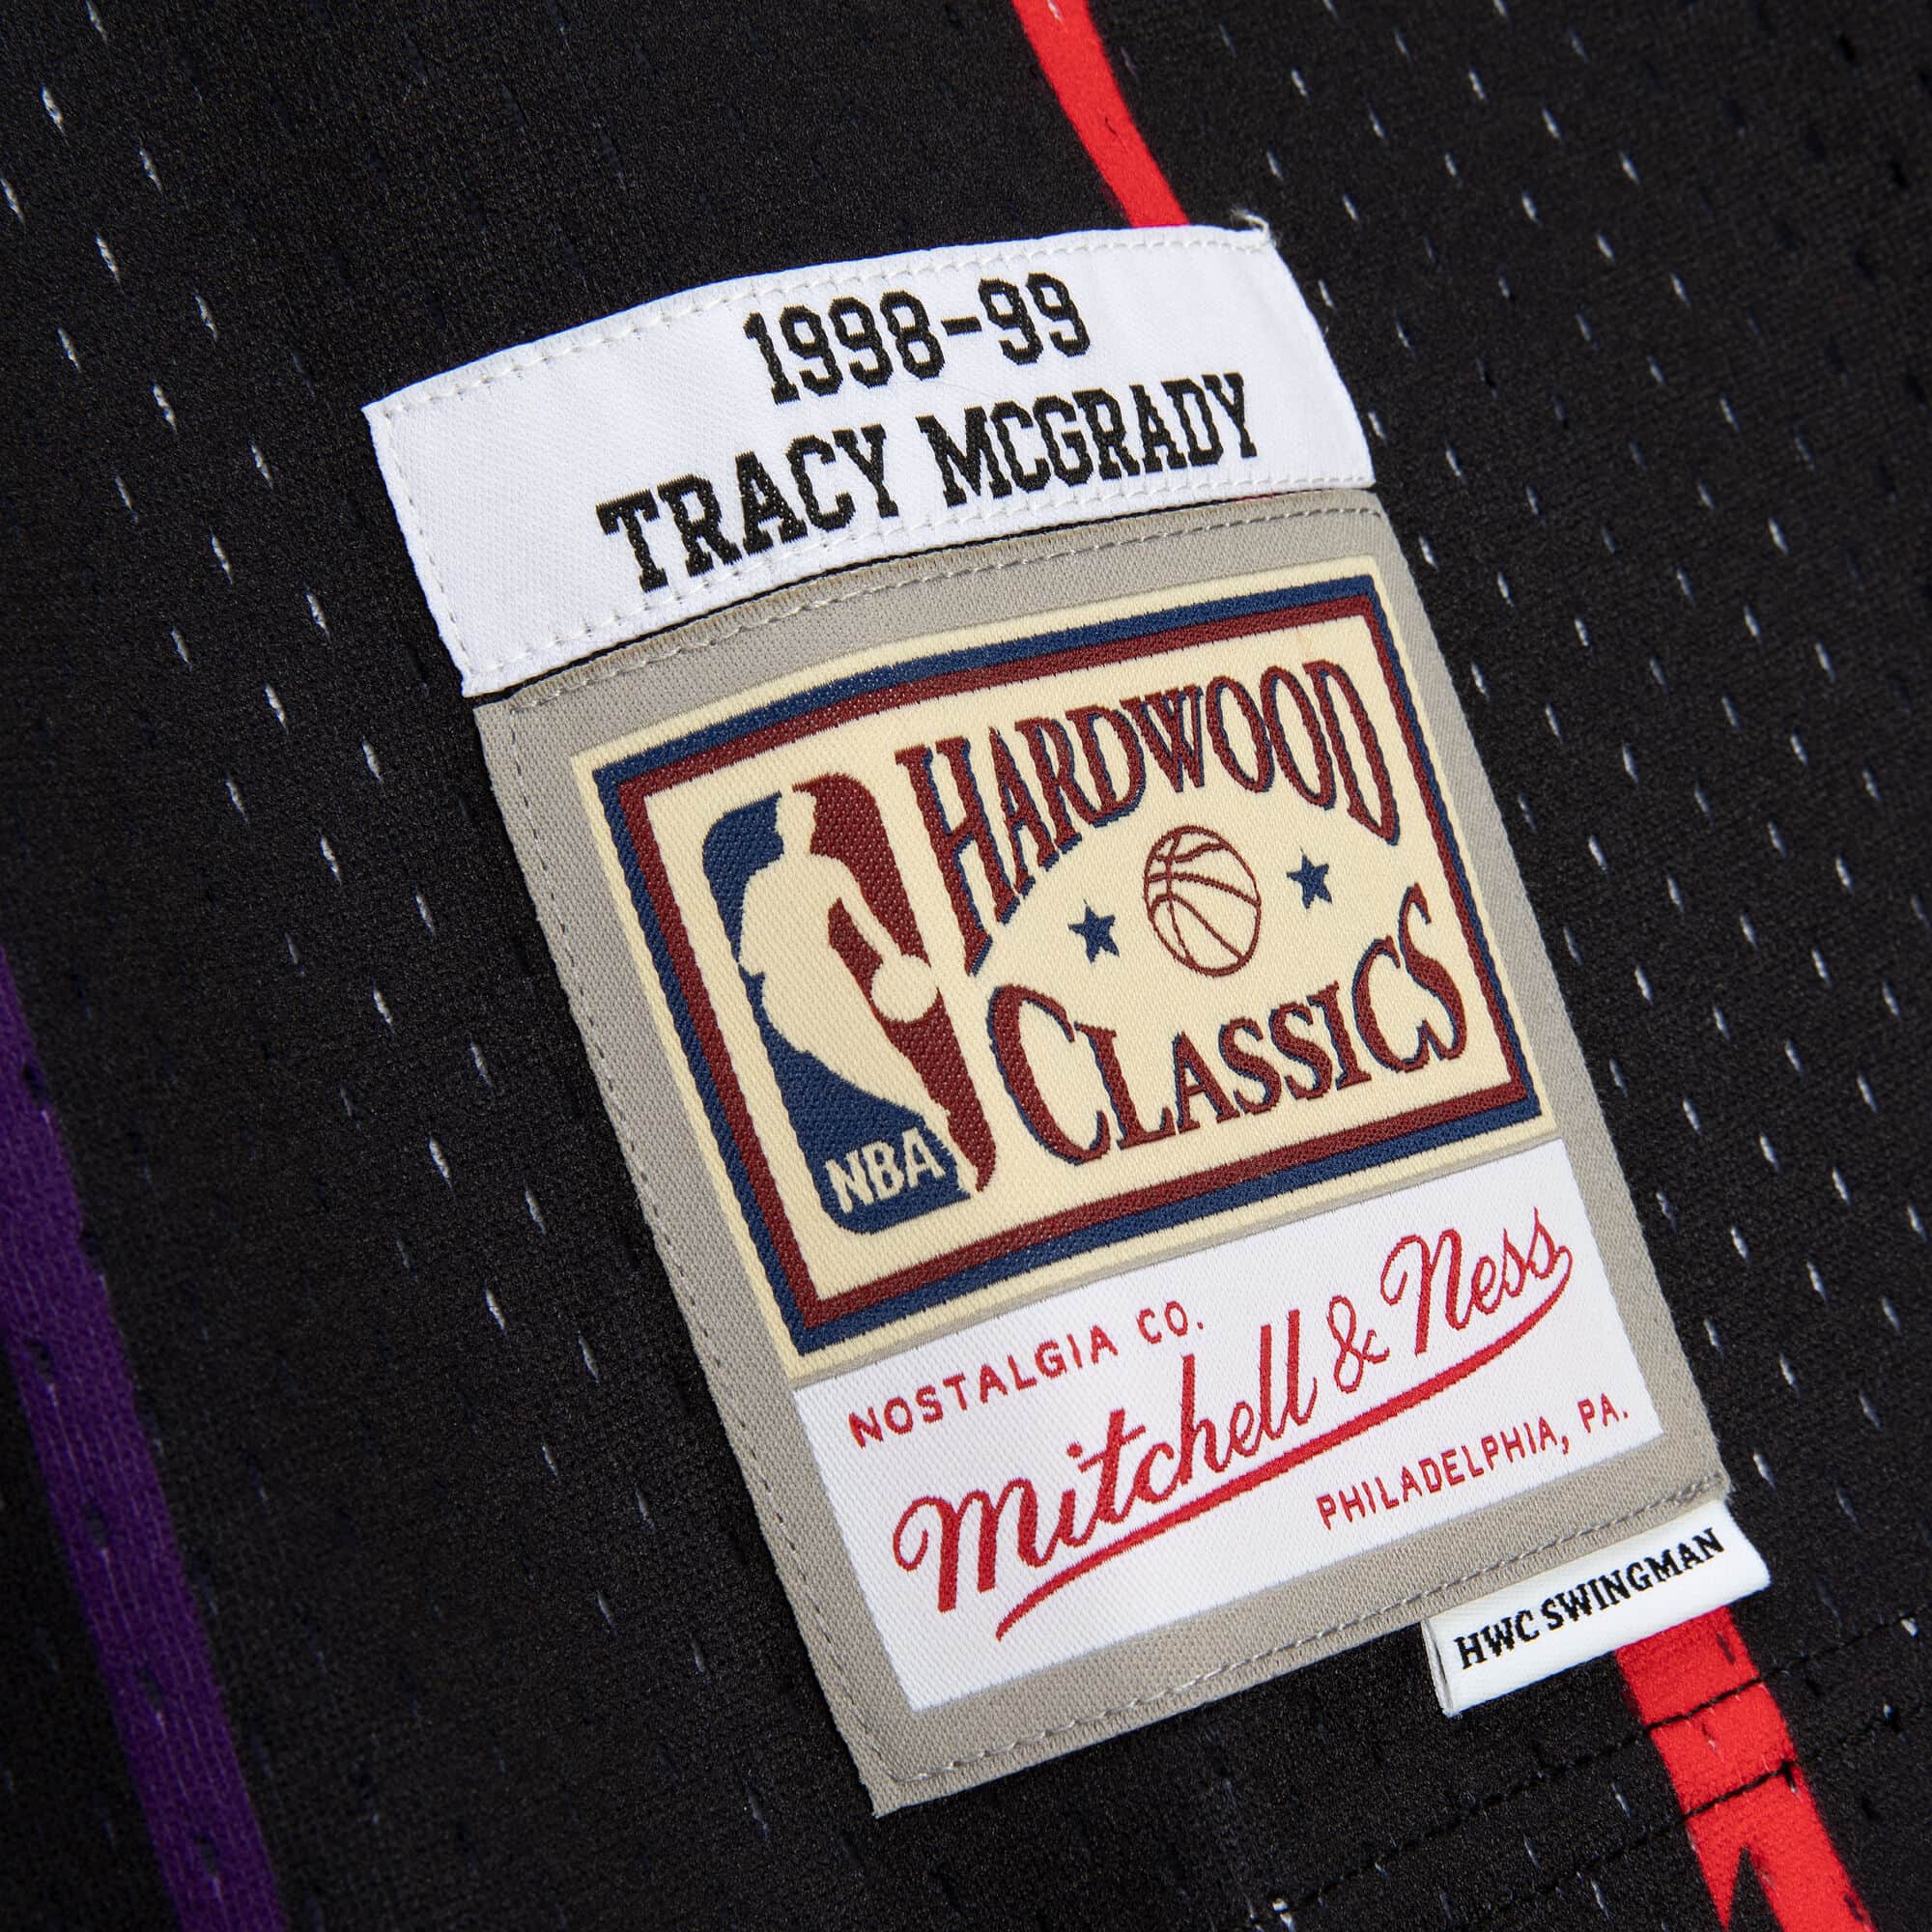 NBA Swingman Toronto Raptors Tracy McGrady Jersey Purple - Burned Sports